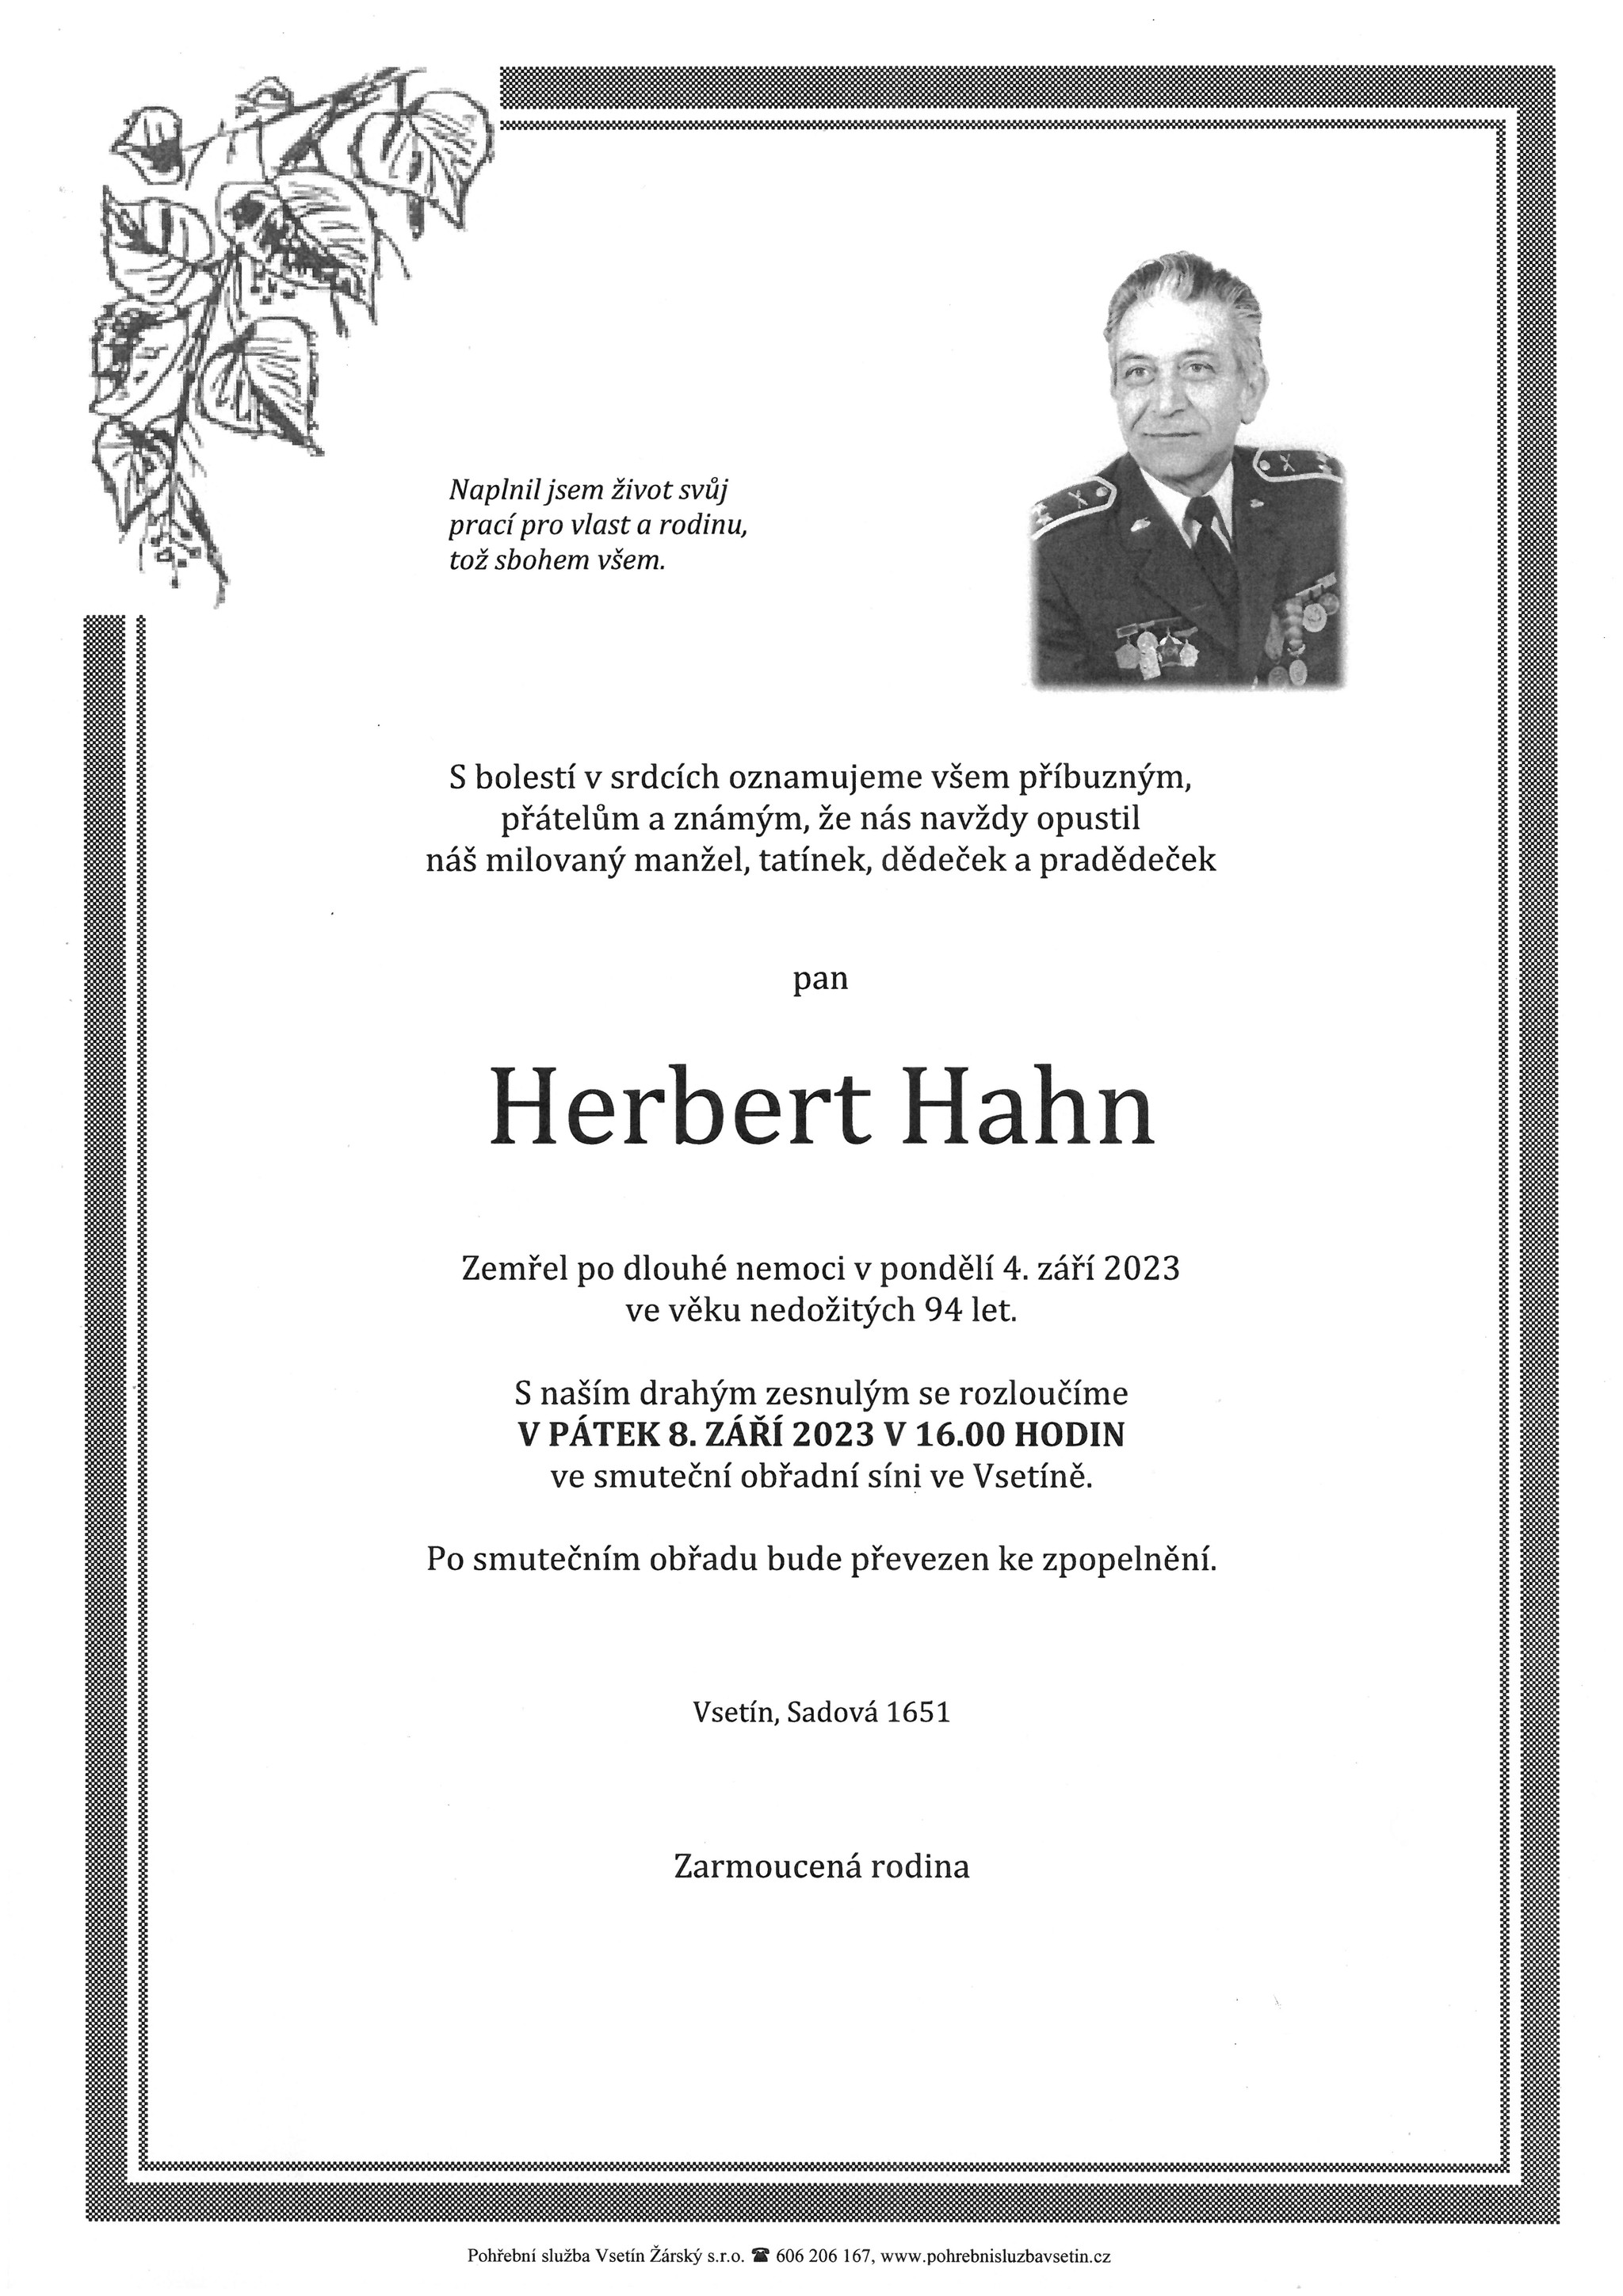 Herbert Hahn